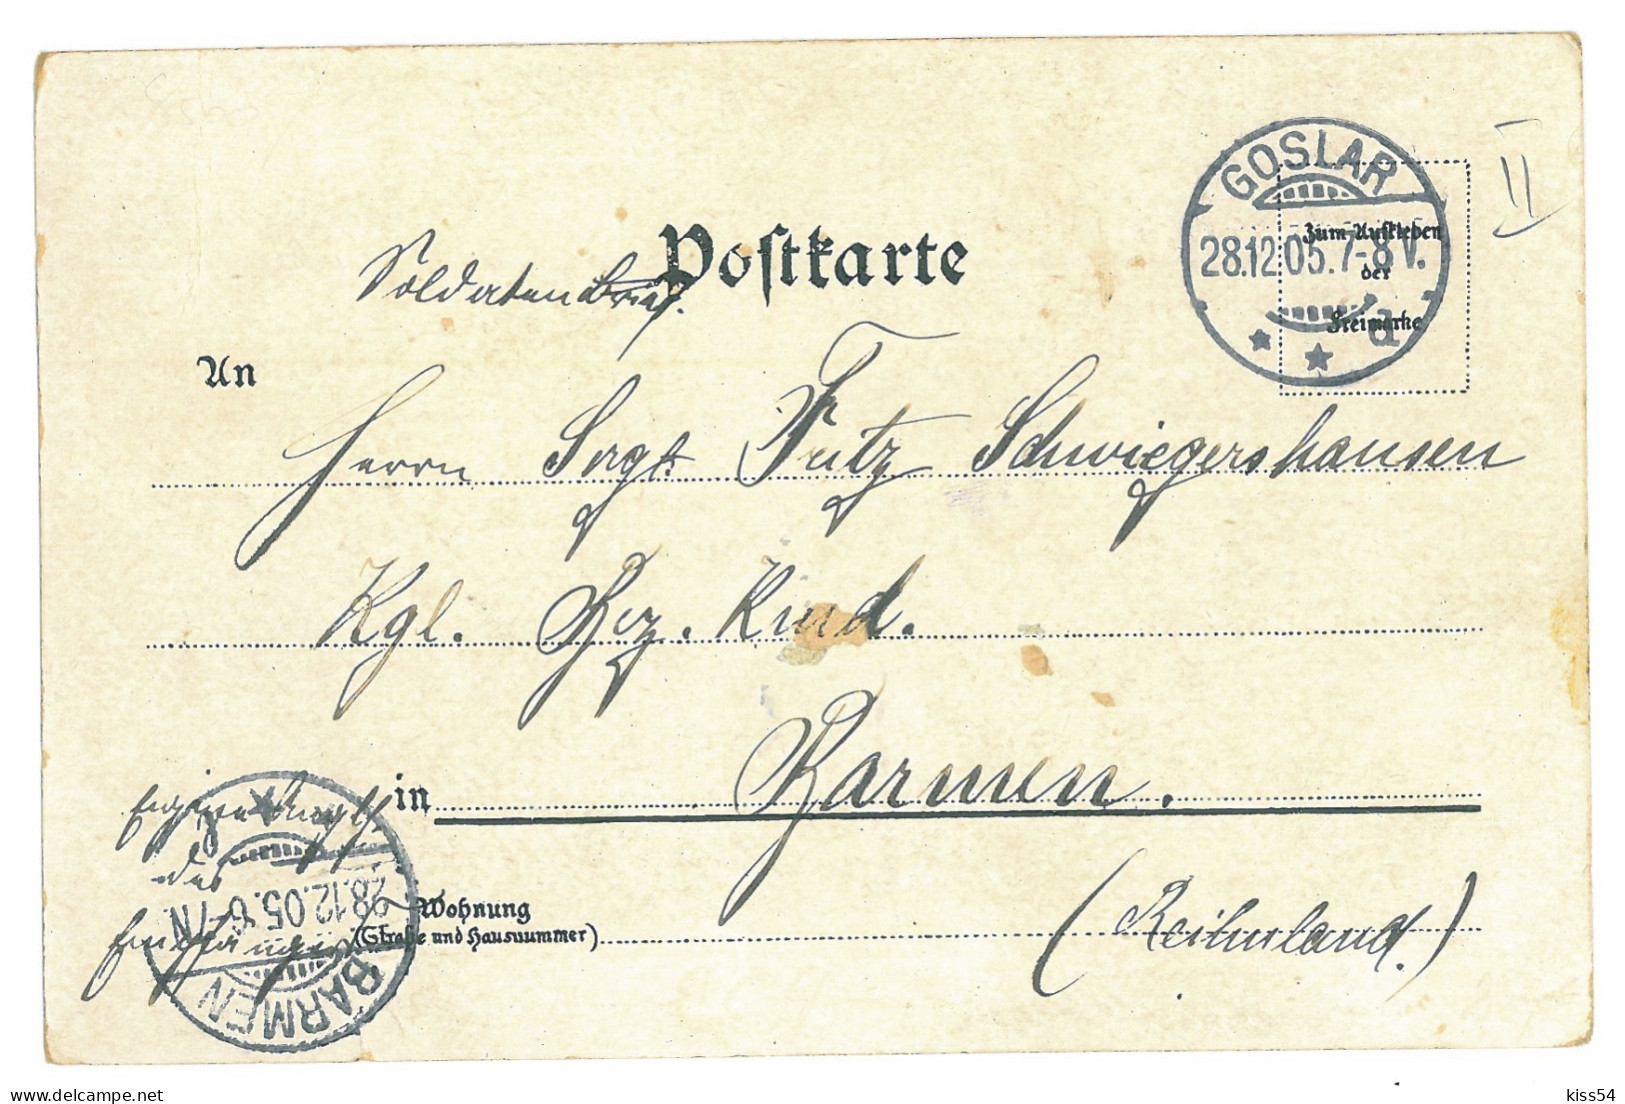 GER 60 - 17237 NURNBERG, Litho, Germany - Old Postcard - Used - 1905 - Nürnberg